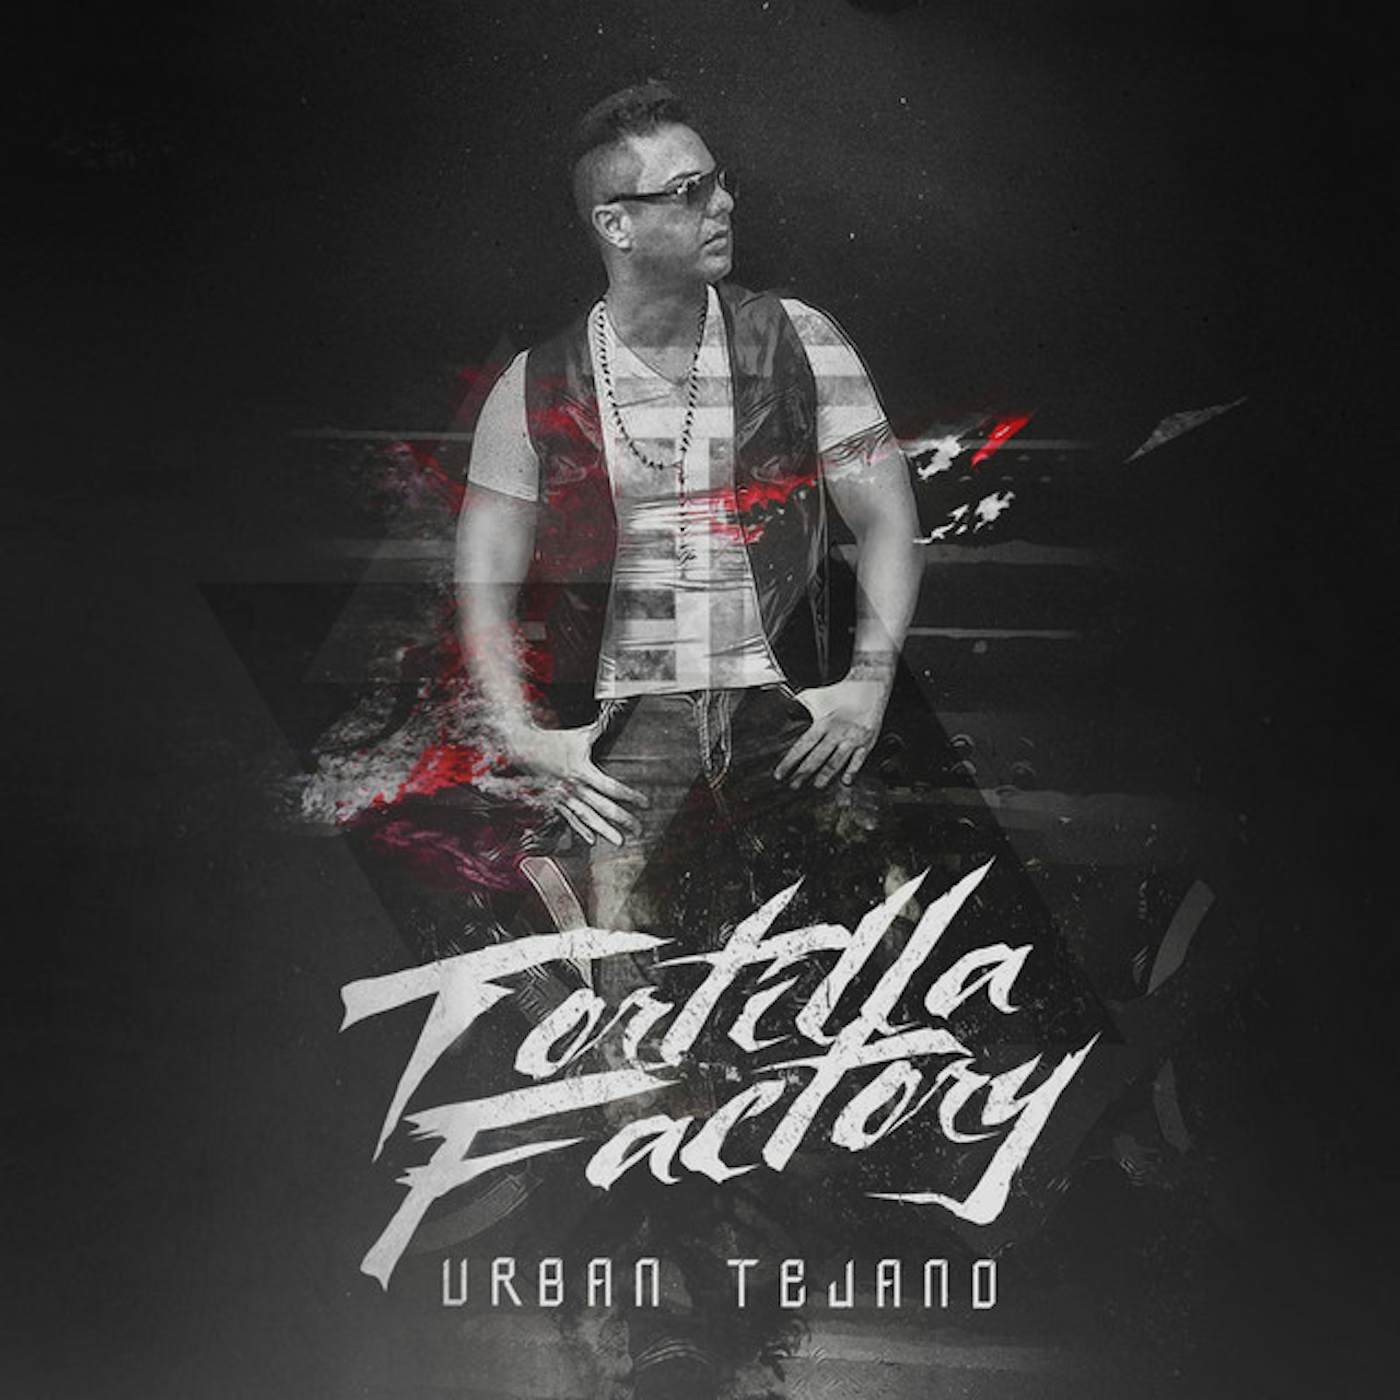 Tortilla Factory URBAN TEJANO CD